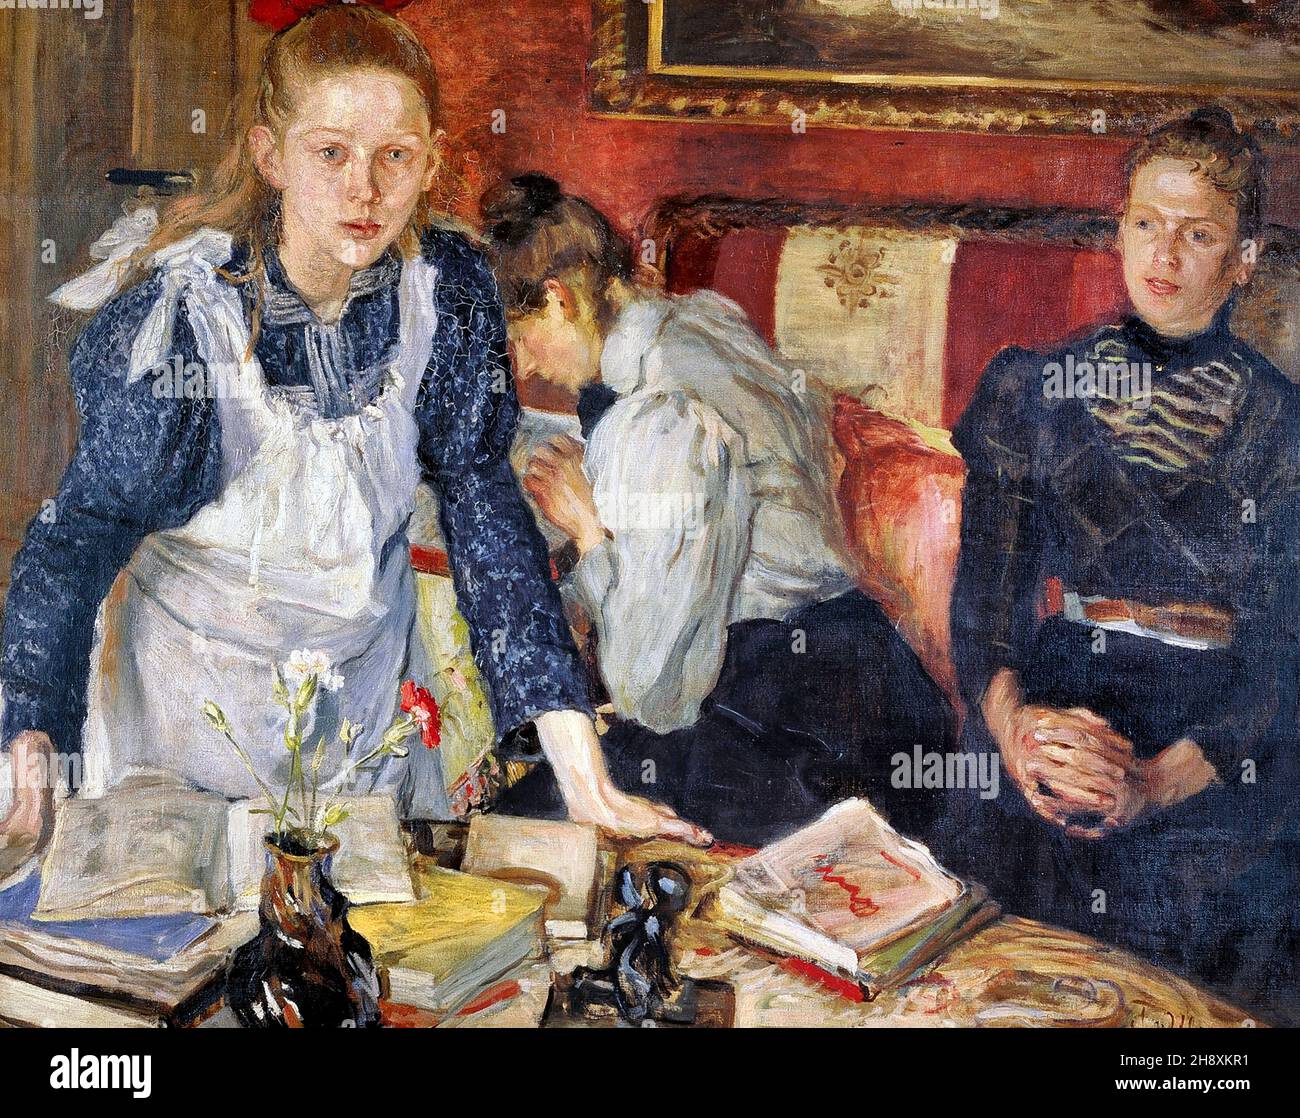 La leçon de l'artiste allemand Fritz von Uhde (1848-1911), huile sur toile, 1899 Banque D'Images